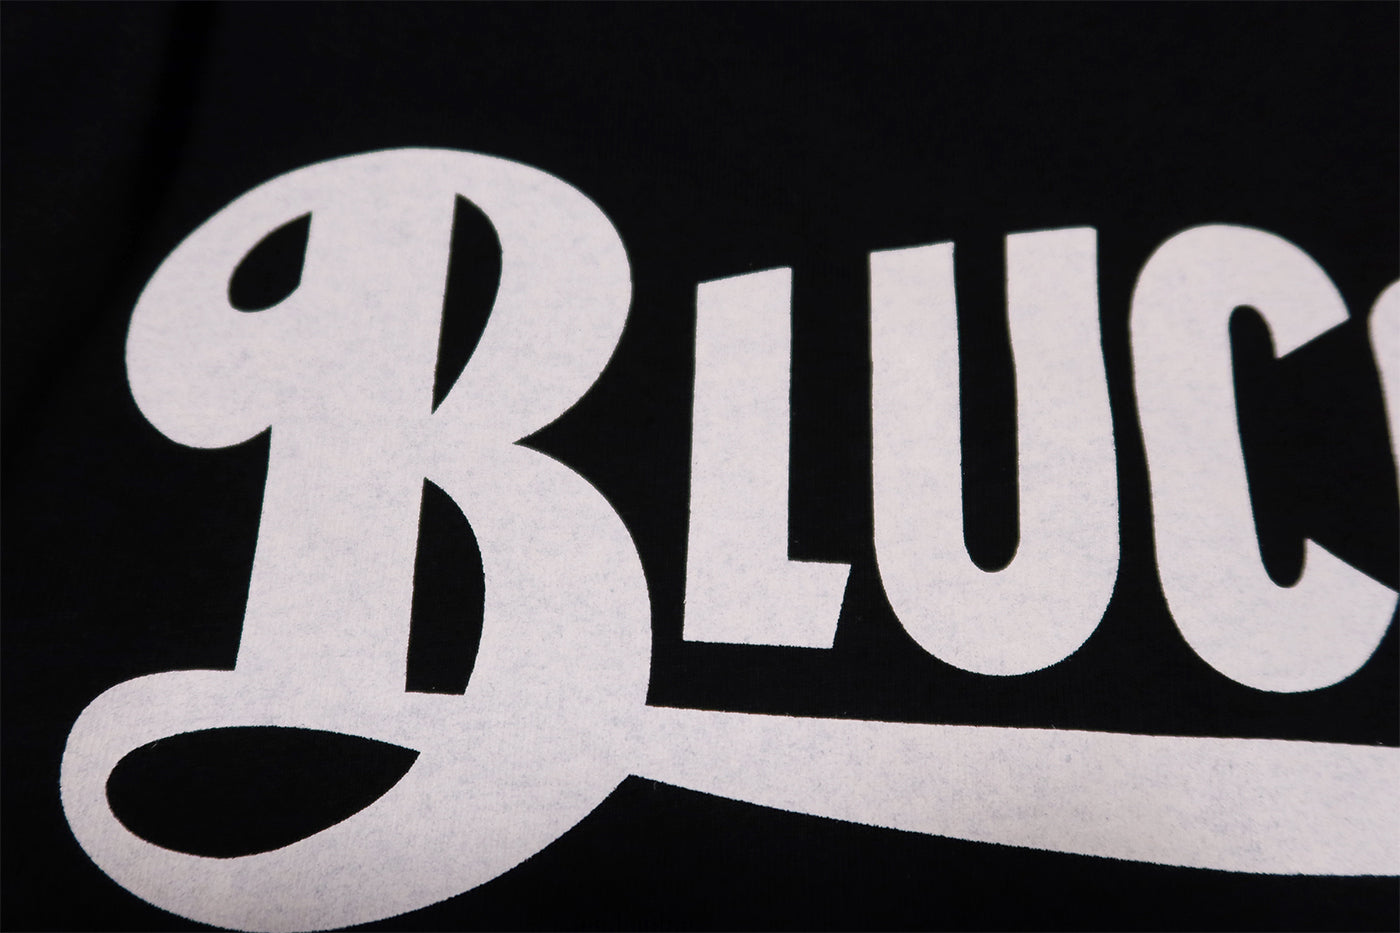 BLUCO ブルコ Tシャツ OLD LOGO ロゴプリント メンズ 半袖 ブラック 143-22-002